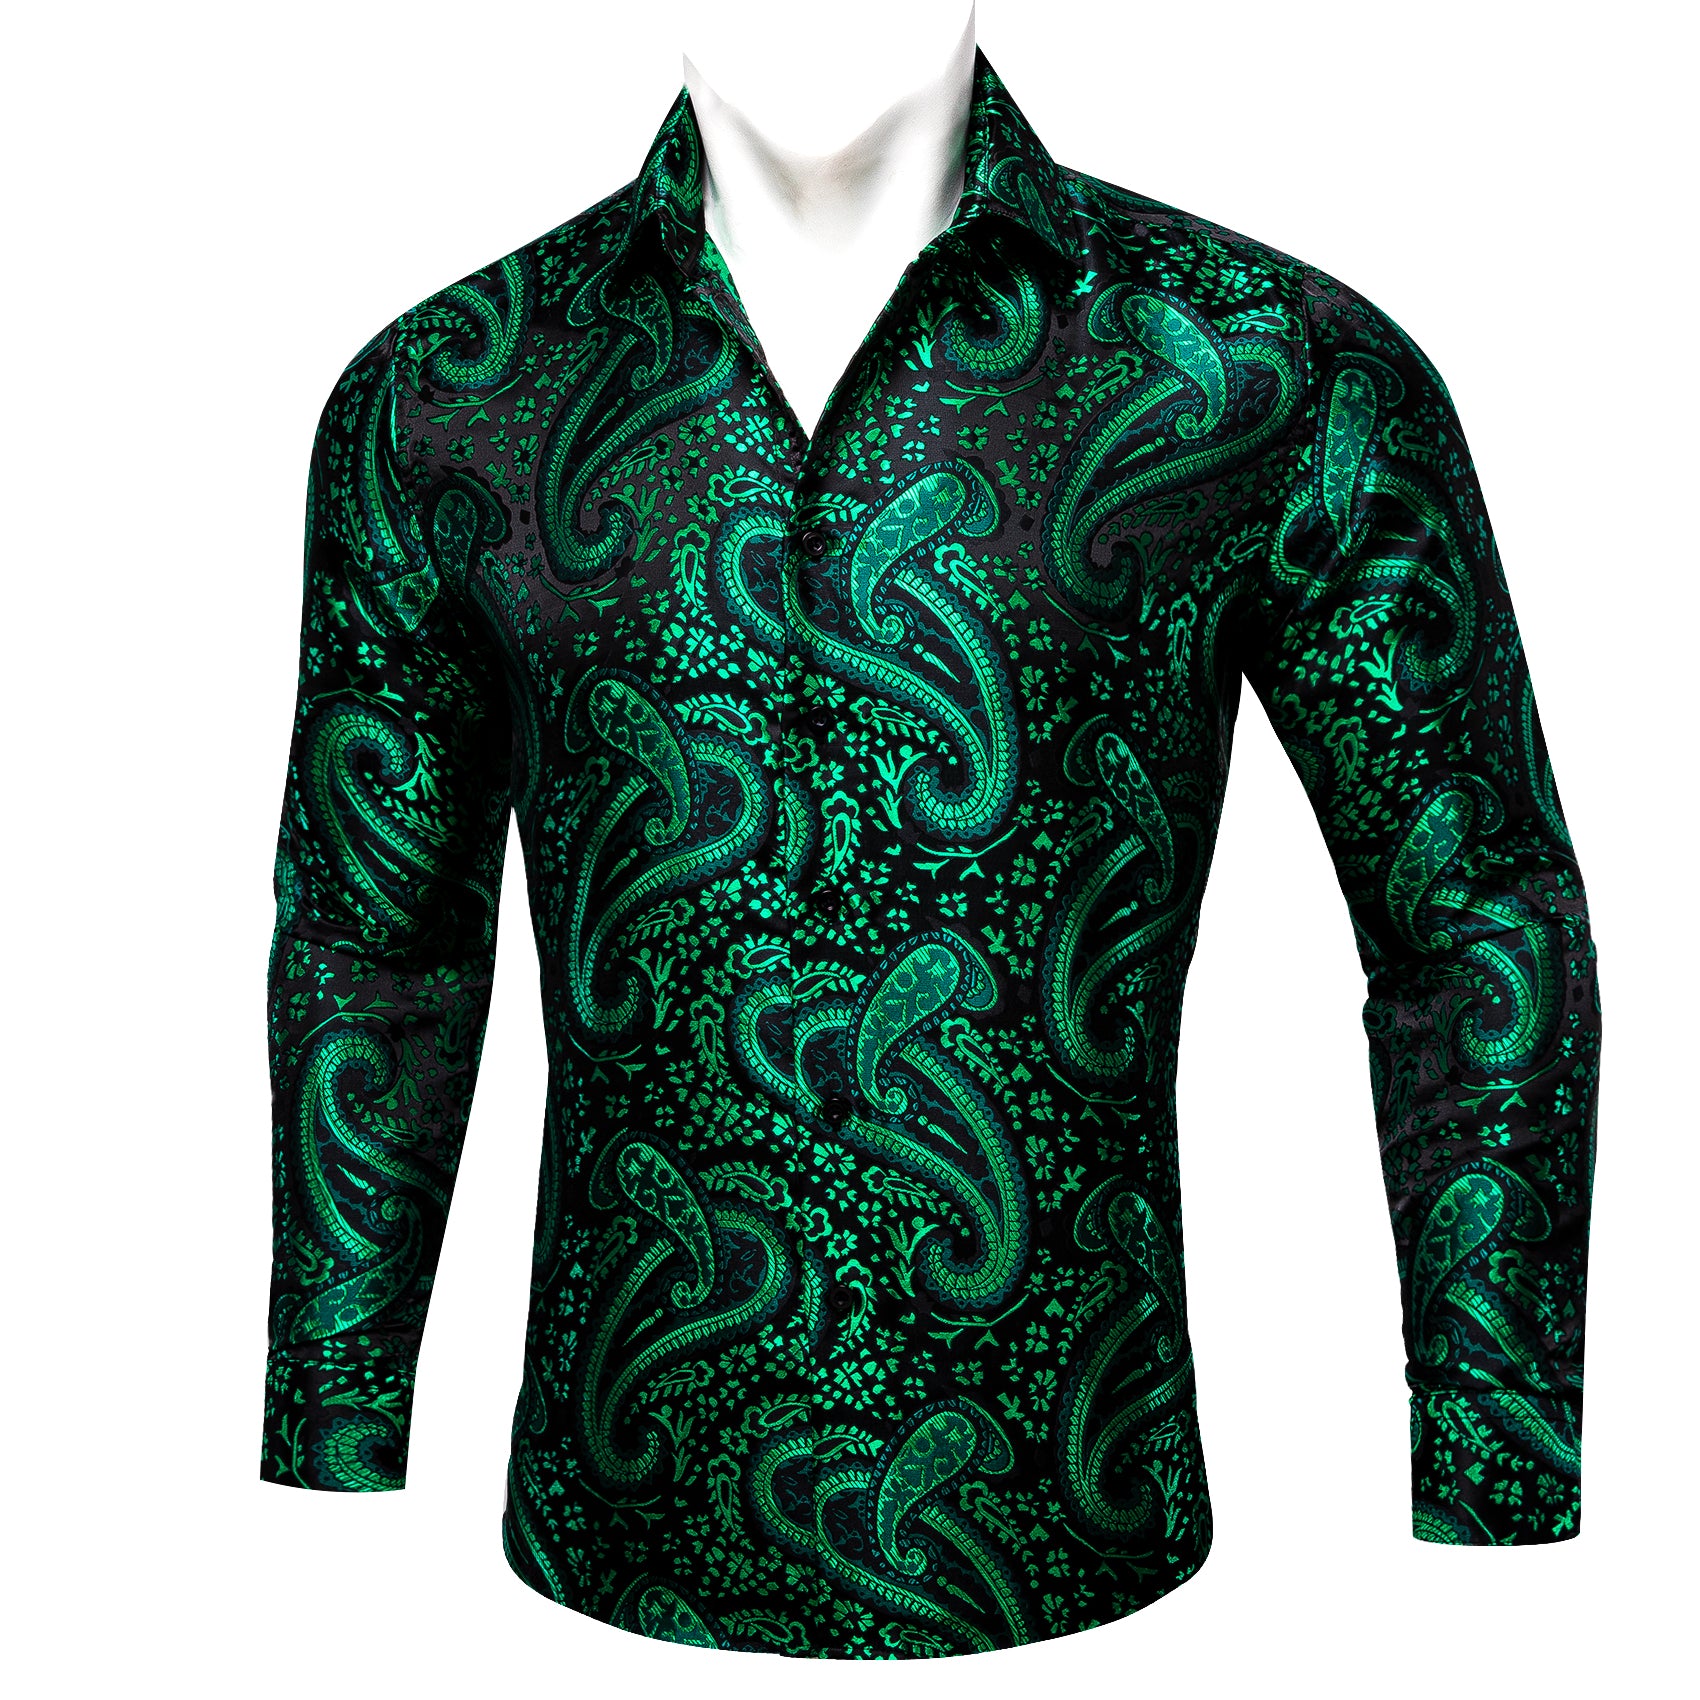 Barry.wang Dark Green Paisley Silk Men's Shirt